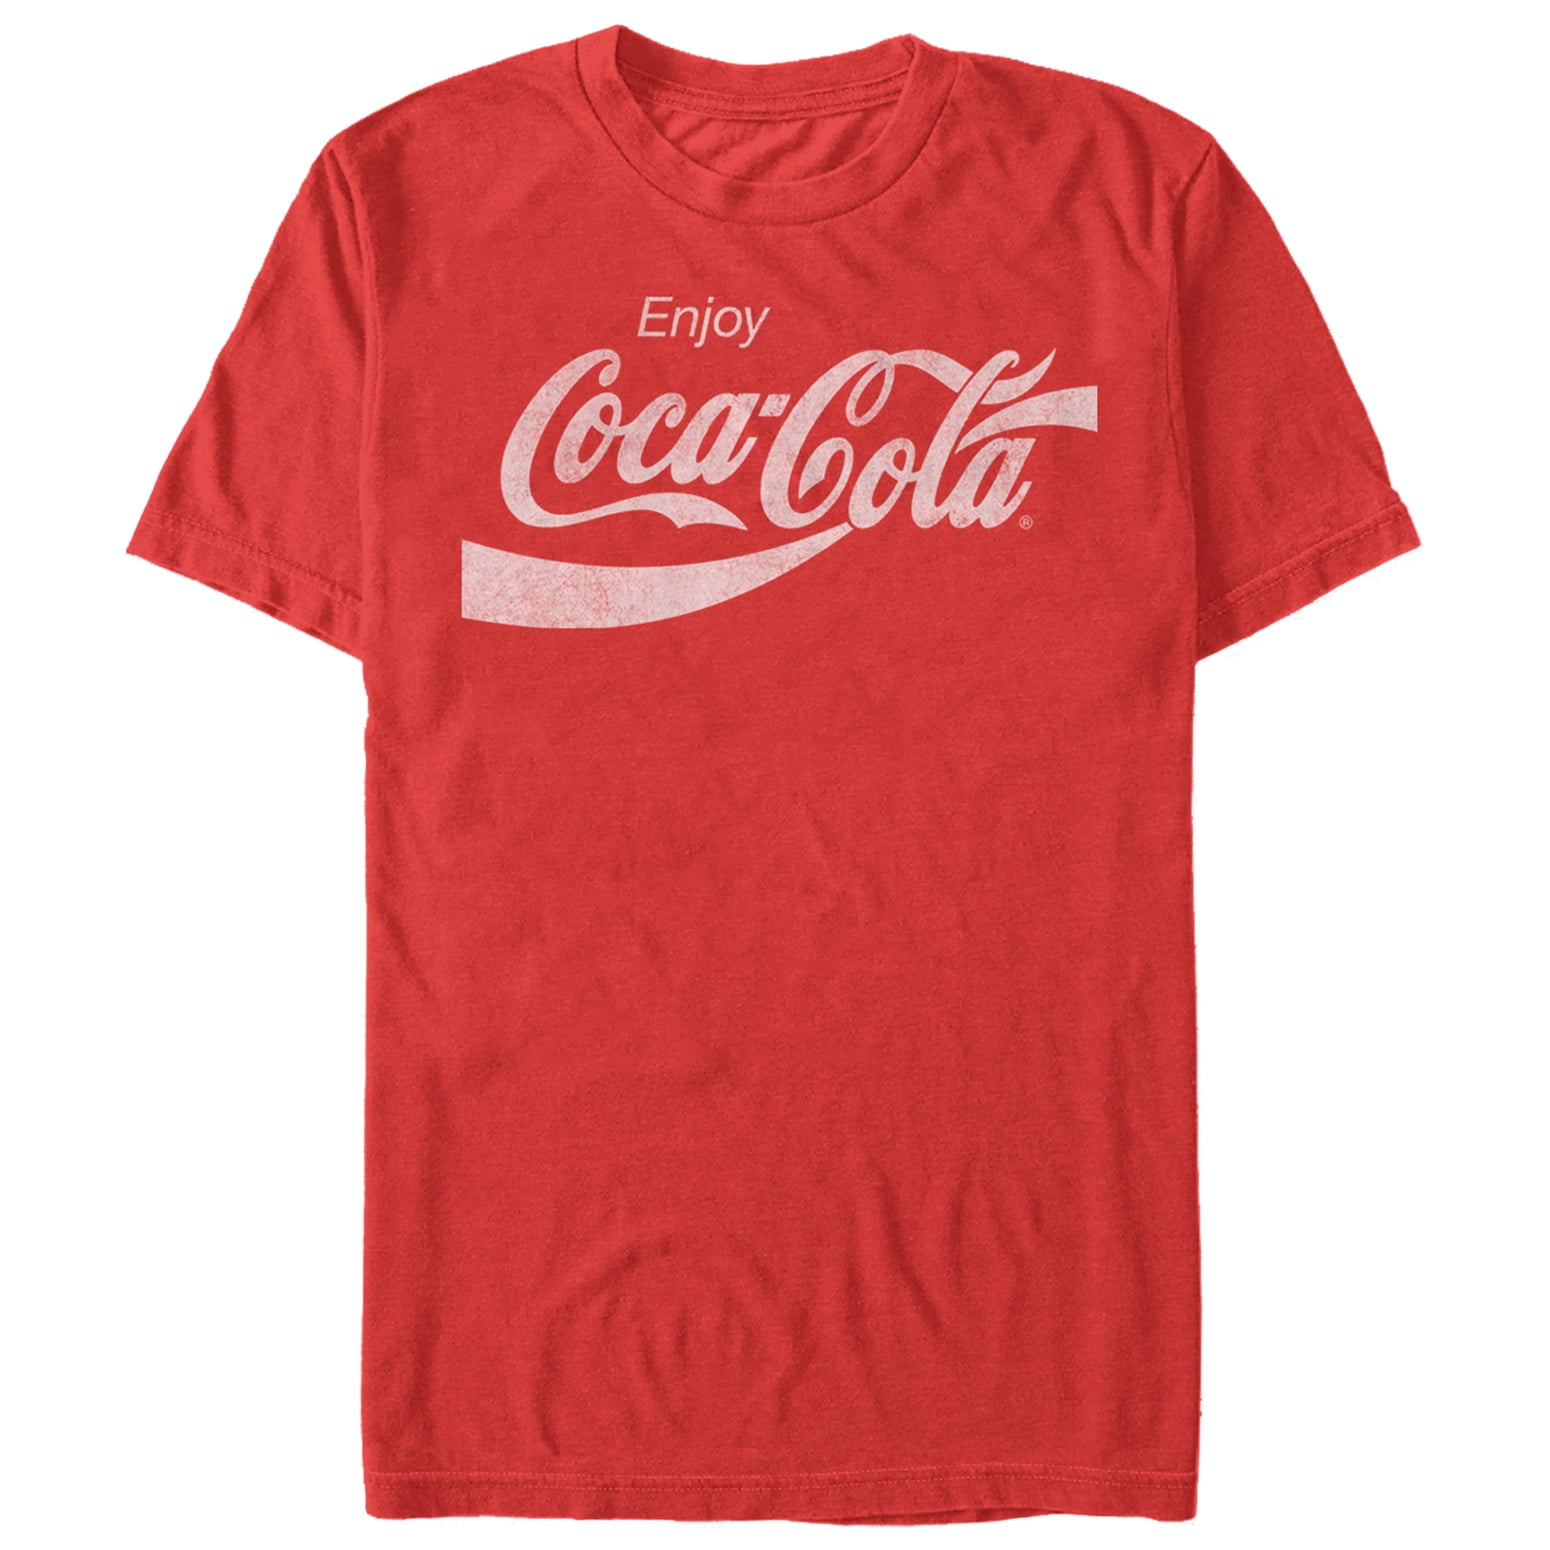 at opfinde Berygtet Forbindelse Men's Coca Cola Enjoy Logo T-Shirt - Walmart.com